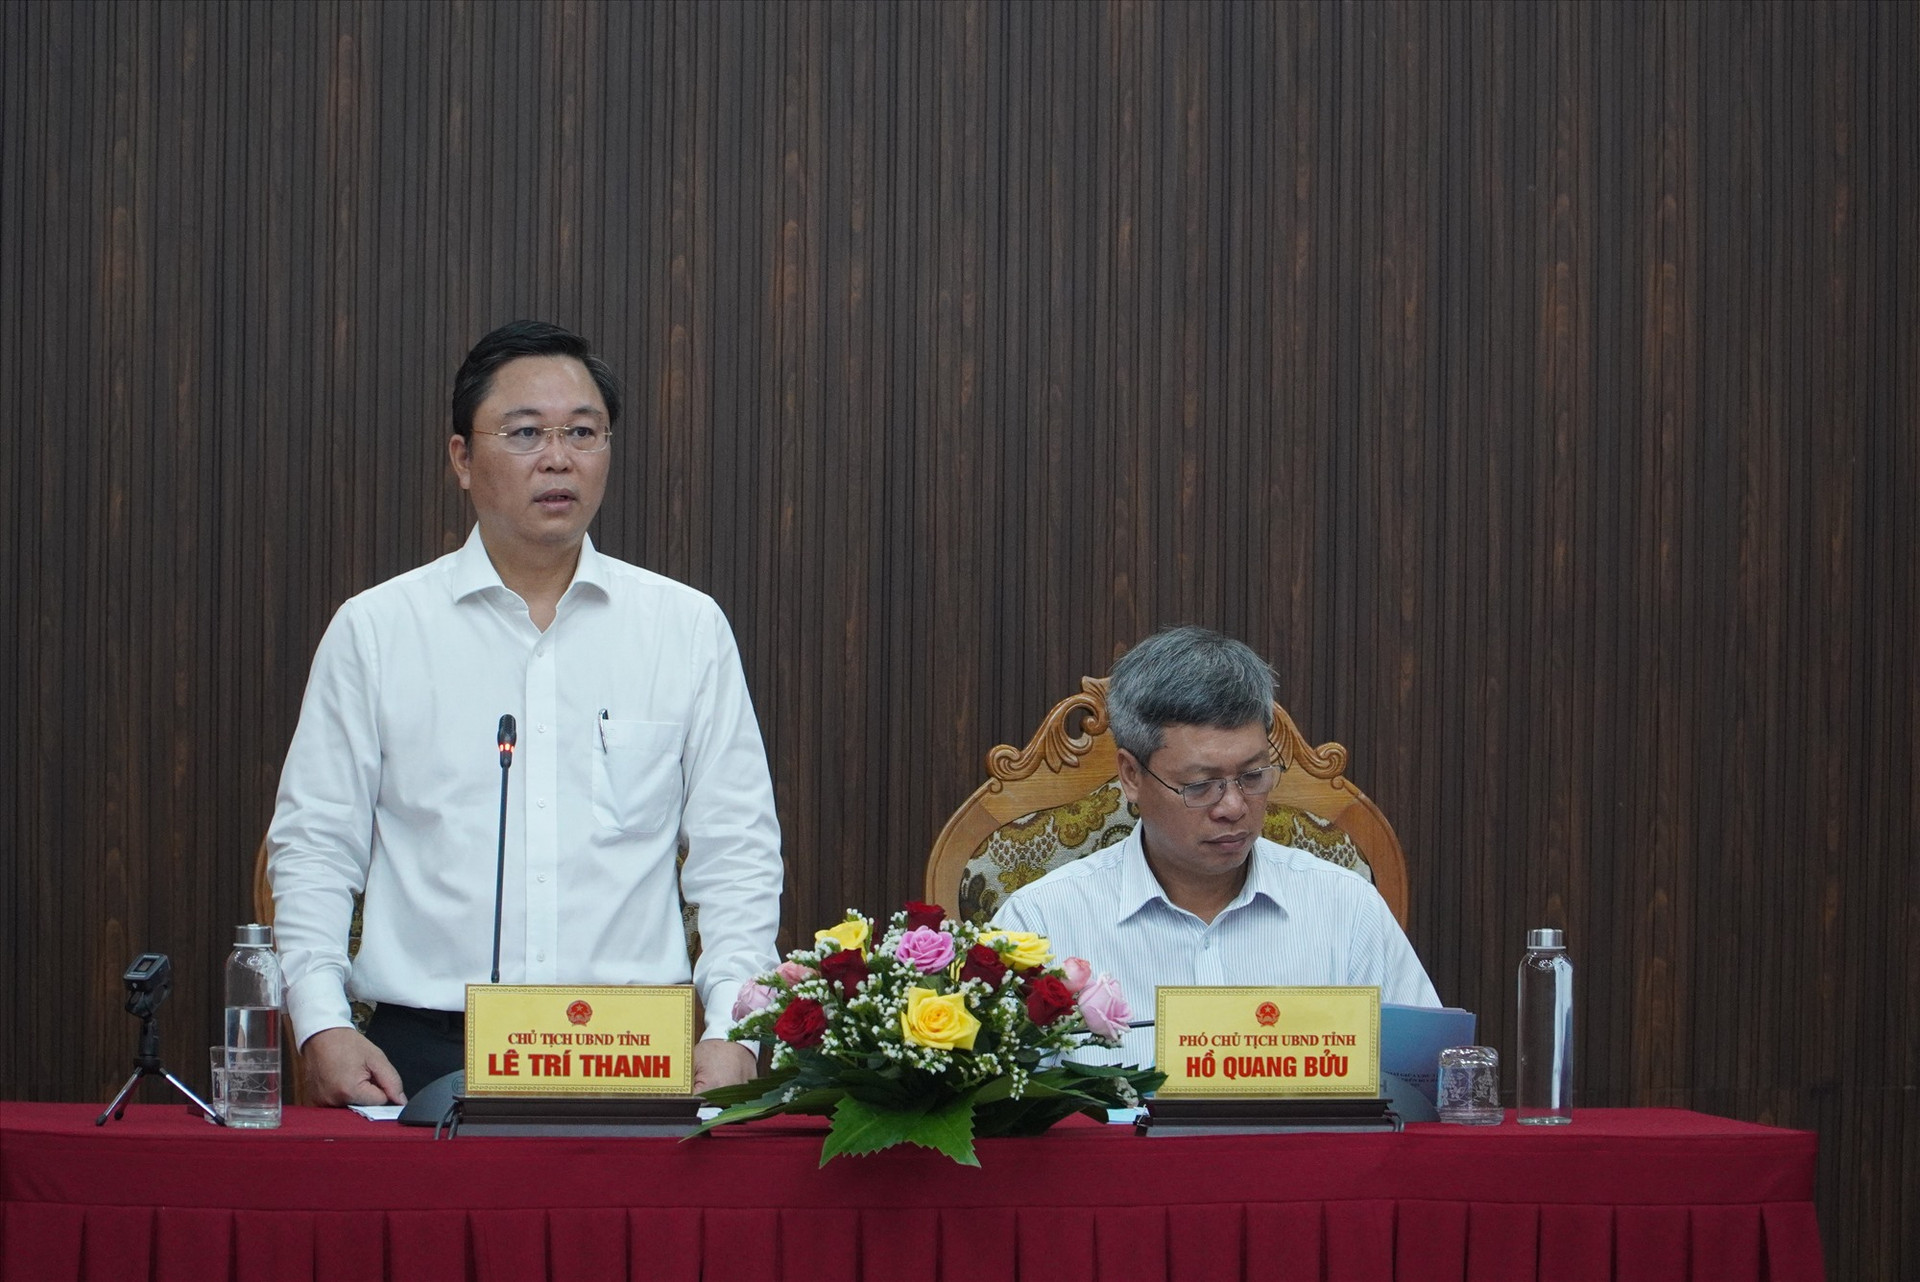 Chủ tịch UBND tỉnh Lê Trí Thanh phát biểu khai mạc buổi đối thoại. Ảnh: H.Q